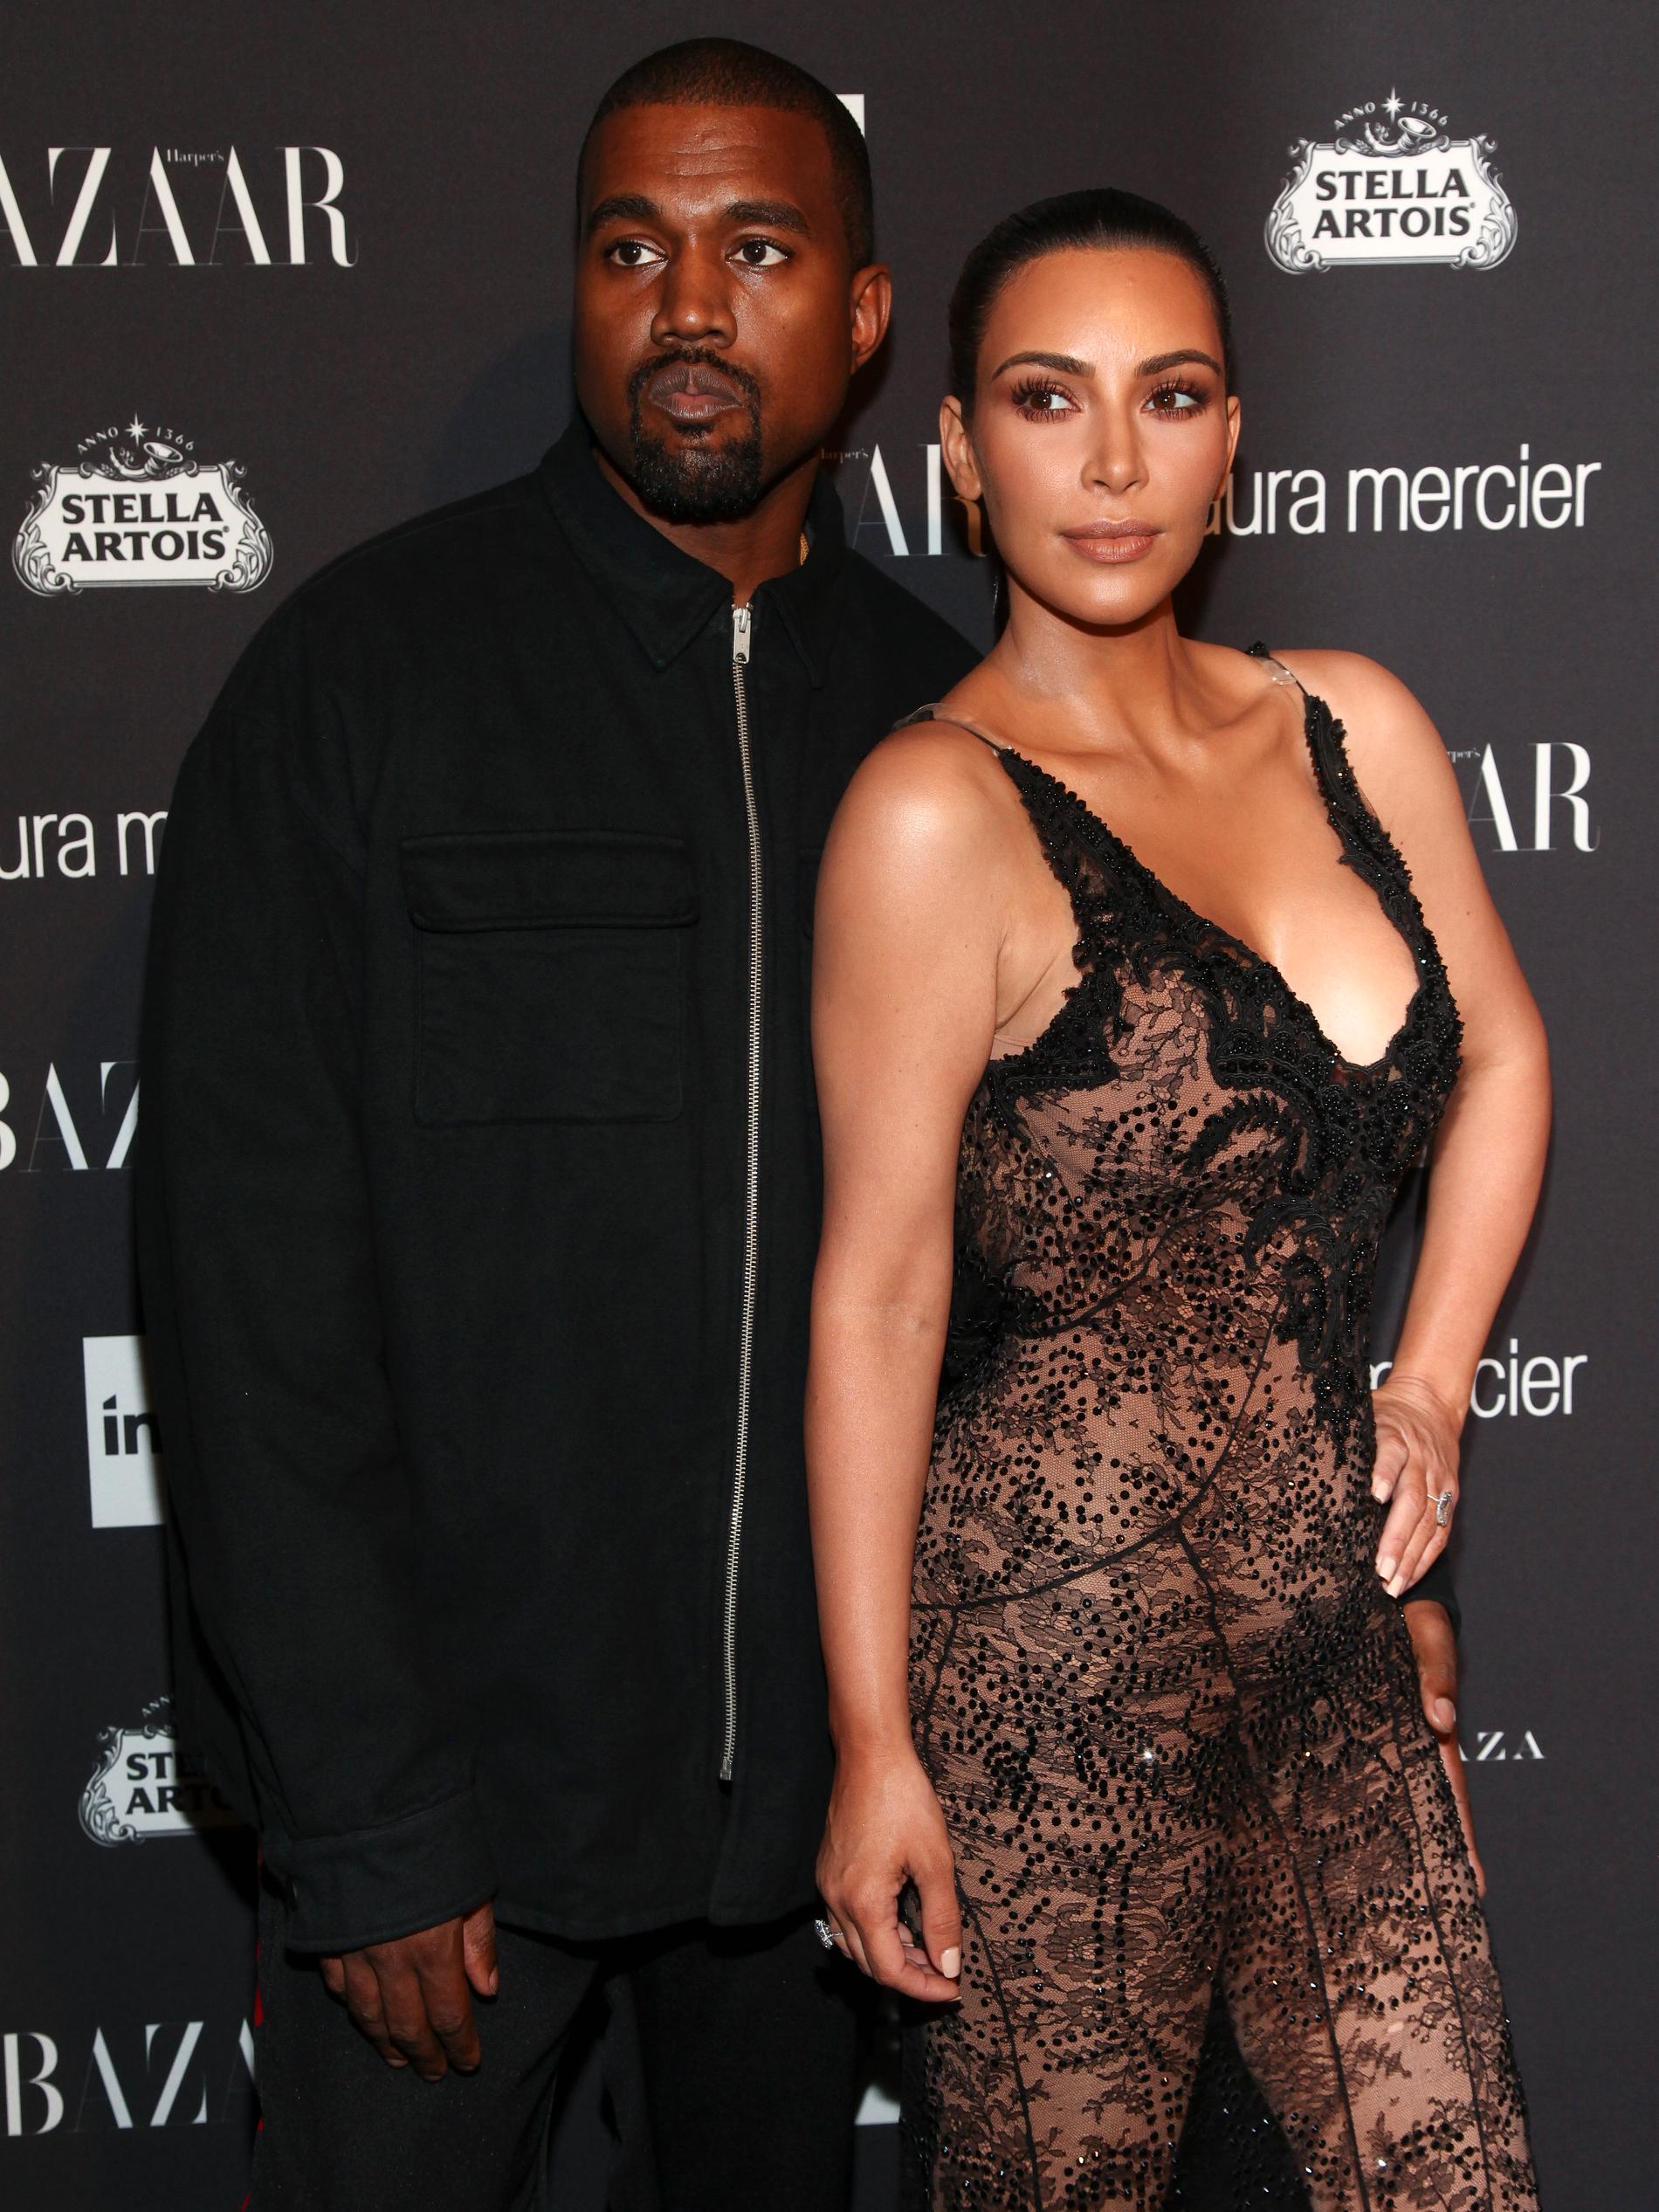 Kanye West och Kim Kardashian.